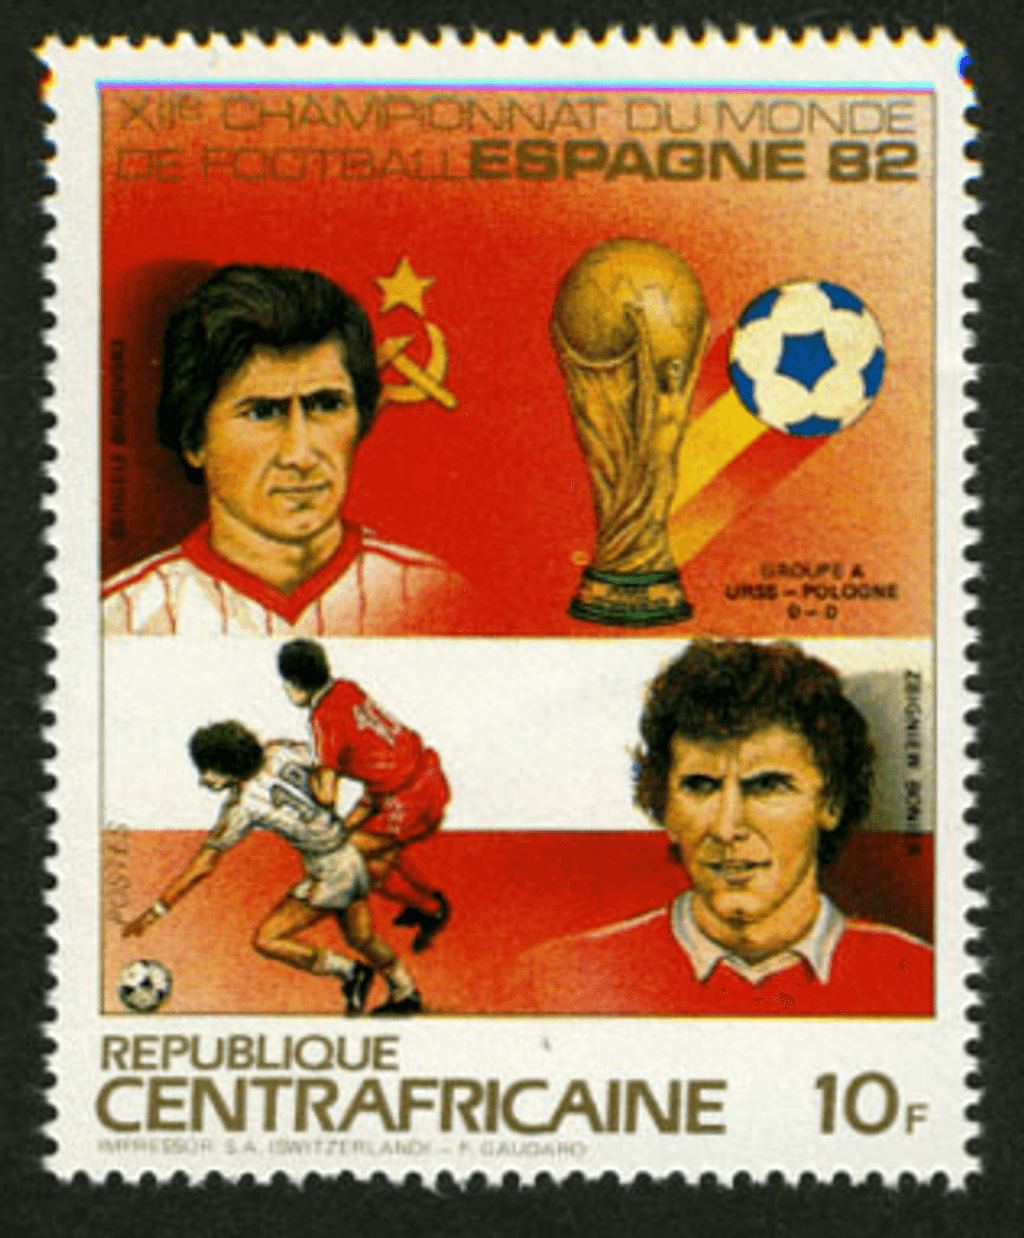 World Footbal Cup 1982 (Hamilton-Pezzey-Borovski-Boniek-Zamora-Passarella-Zico-Rossi-Smolarek-Giresse-Rummenigge)